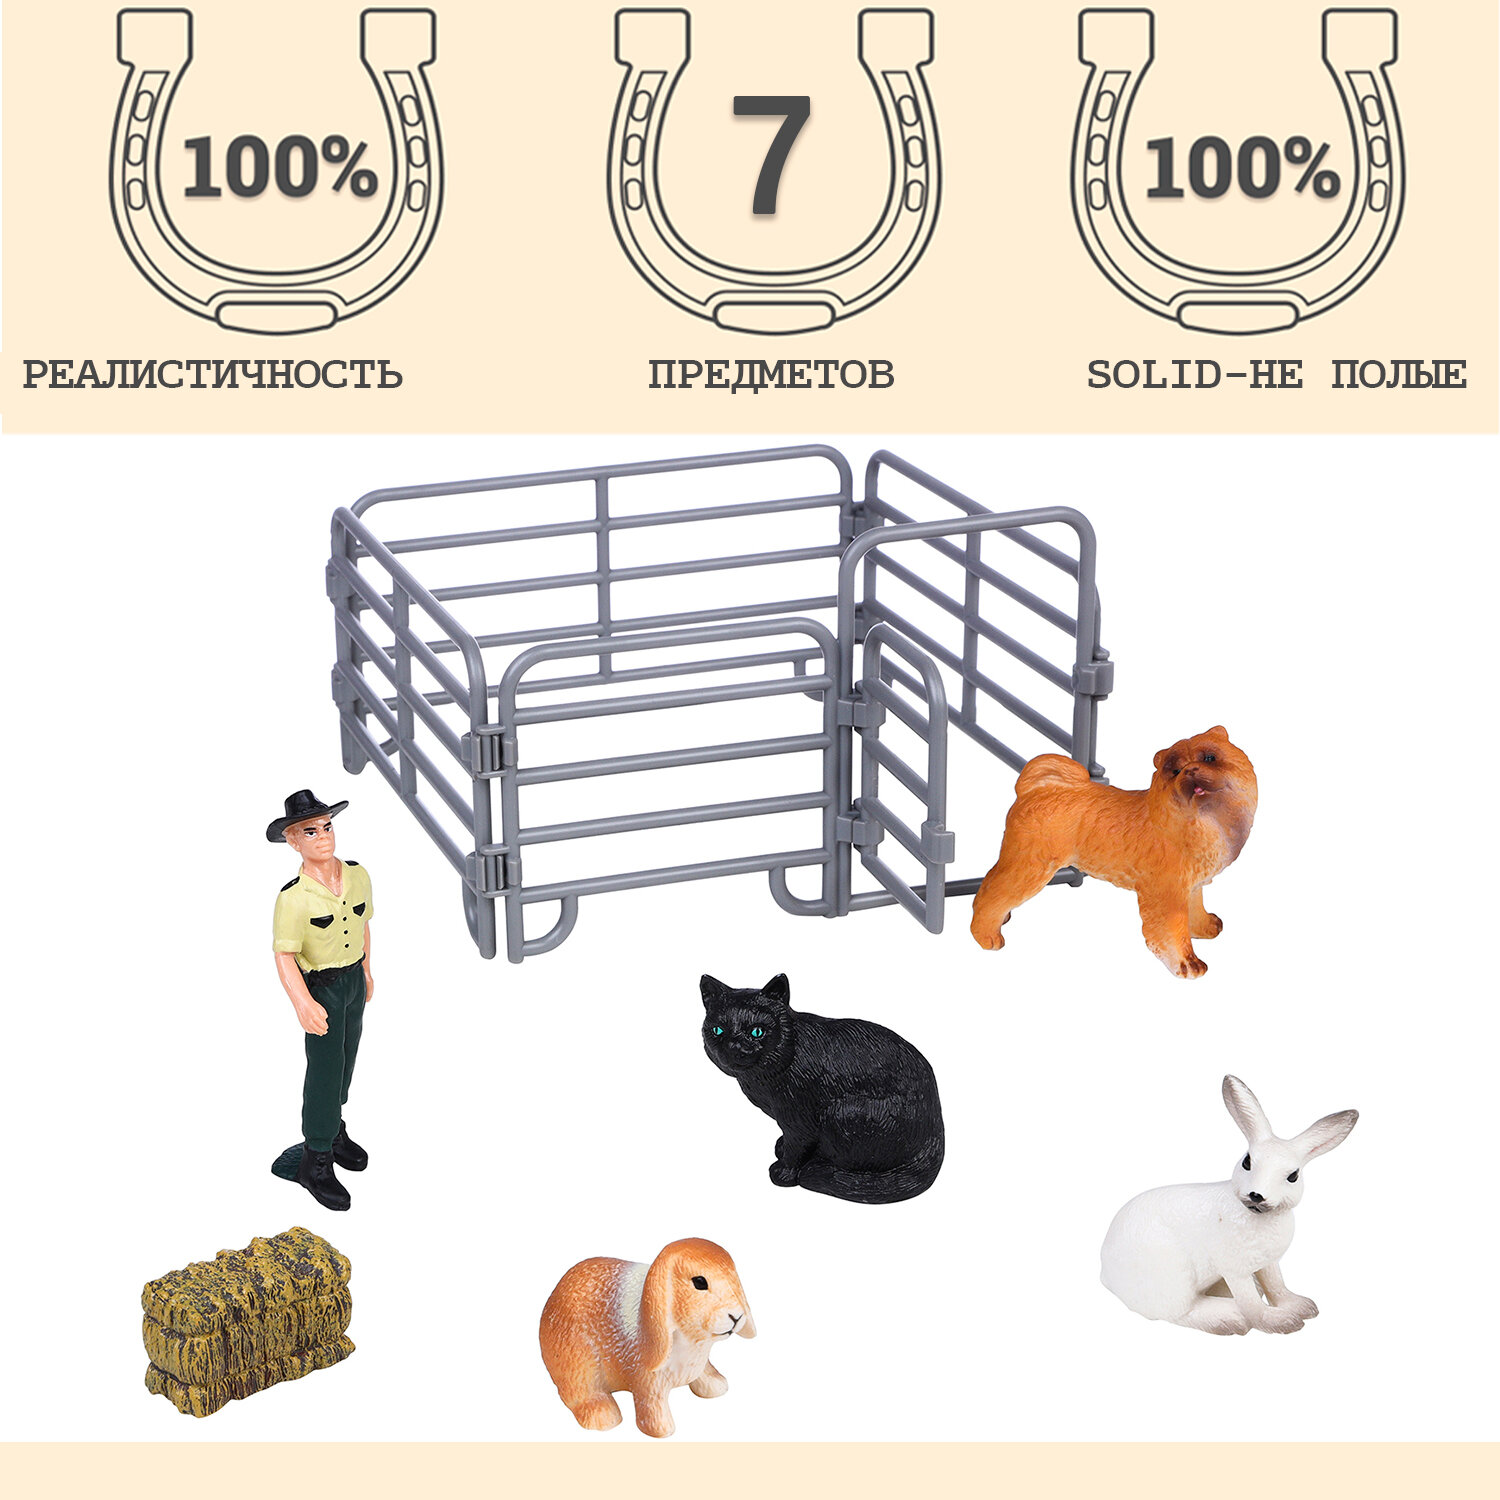 Фигурки животных серии "На ферме": 2 кролика, кошка, собака, рейнджер, ограждение (набор из 7 предметов)